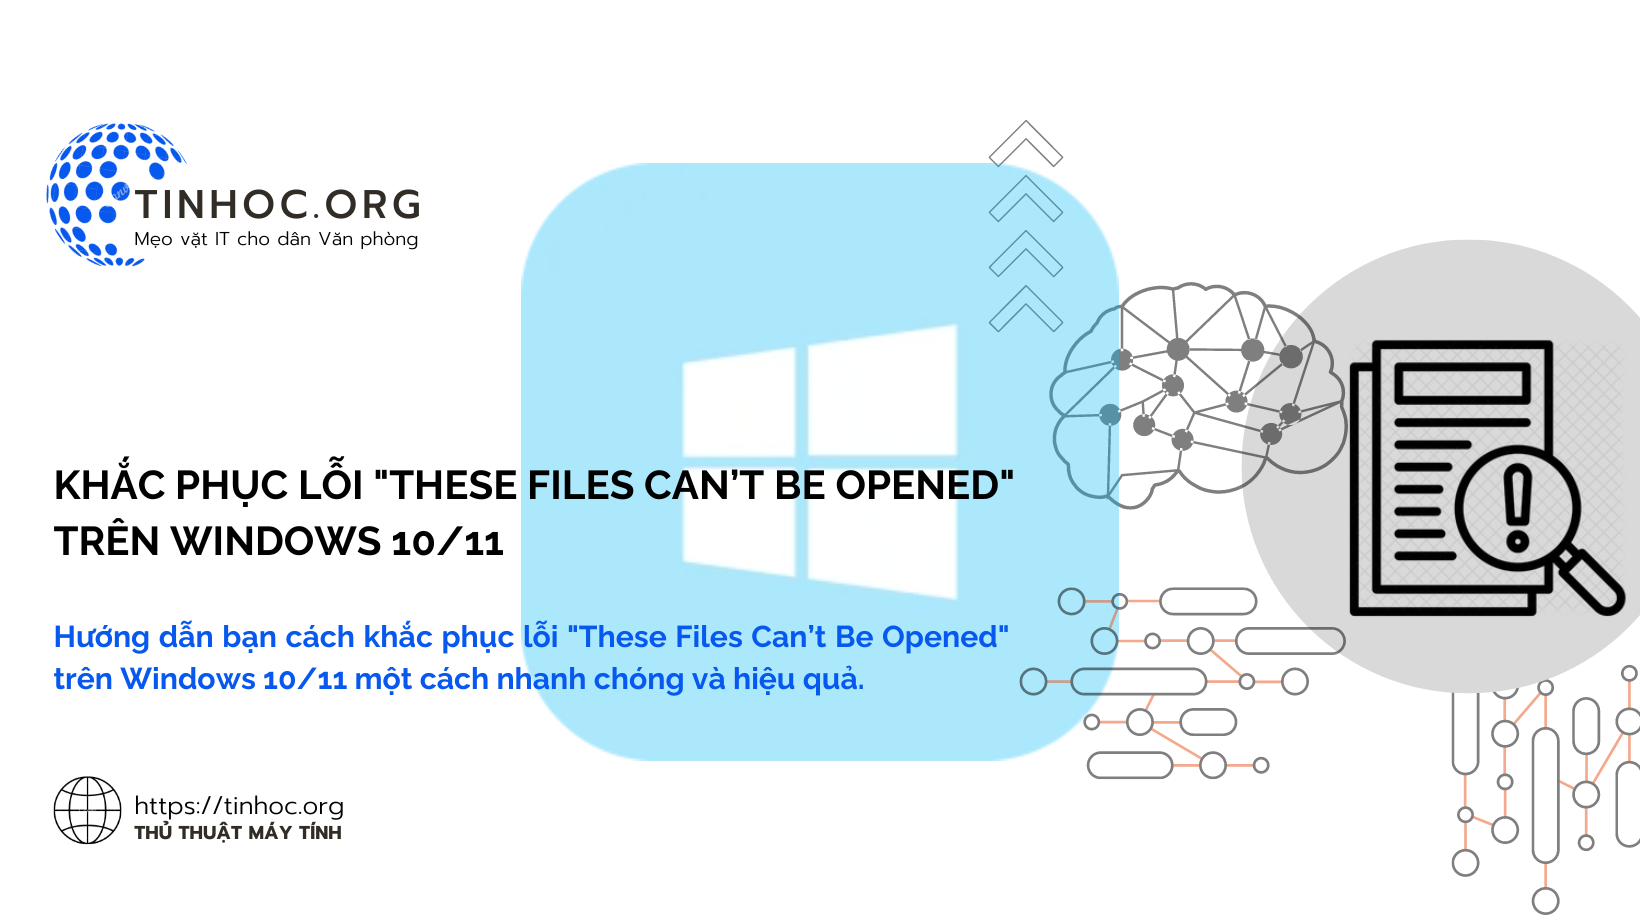 Hướng dẫn bạn cách khắc phục lỗi "These Files Can’t Be Opened" trên Windows 10/11 một cách nhanh chóng và hiệu quả.